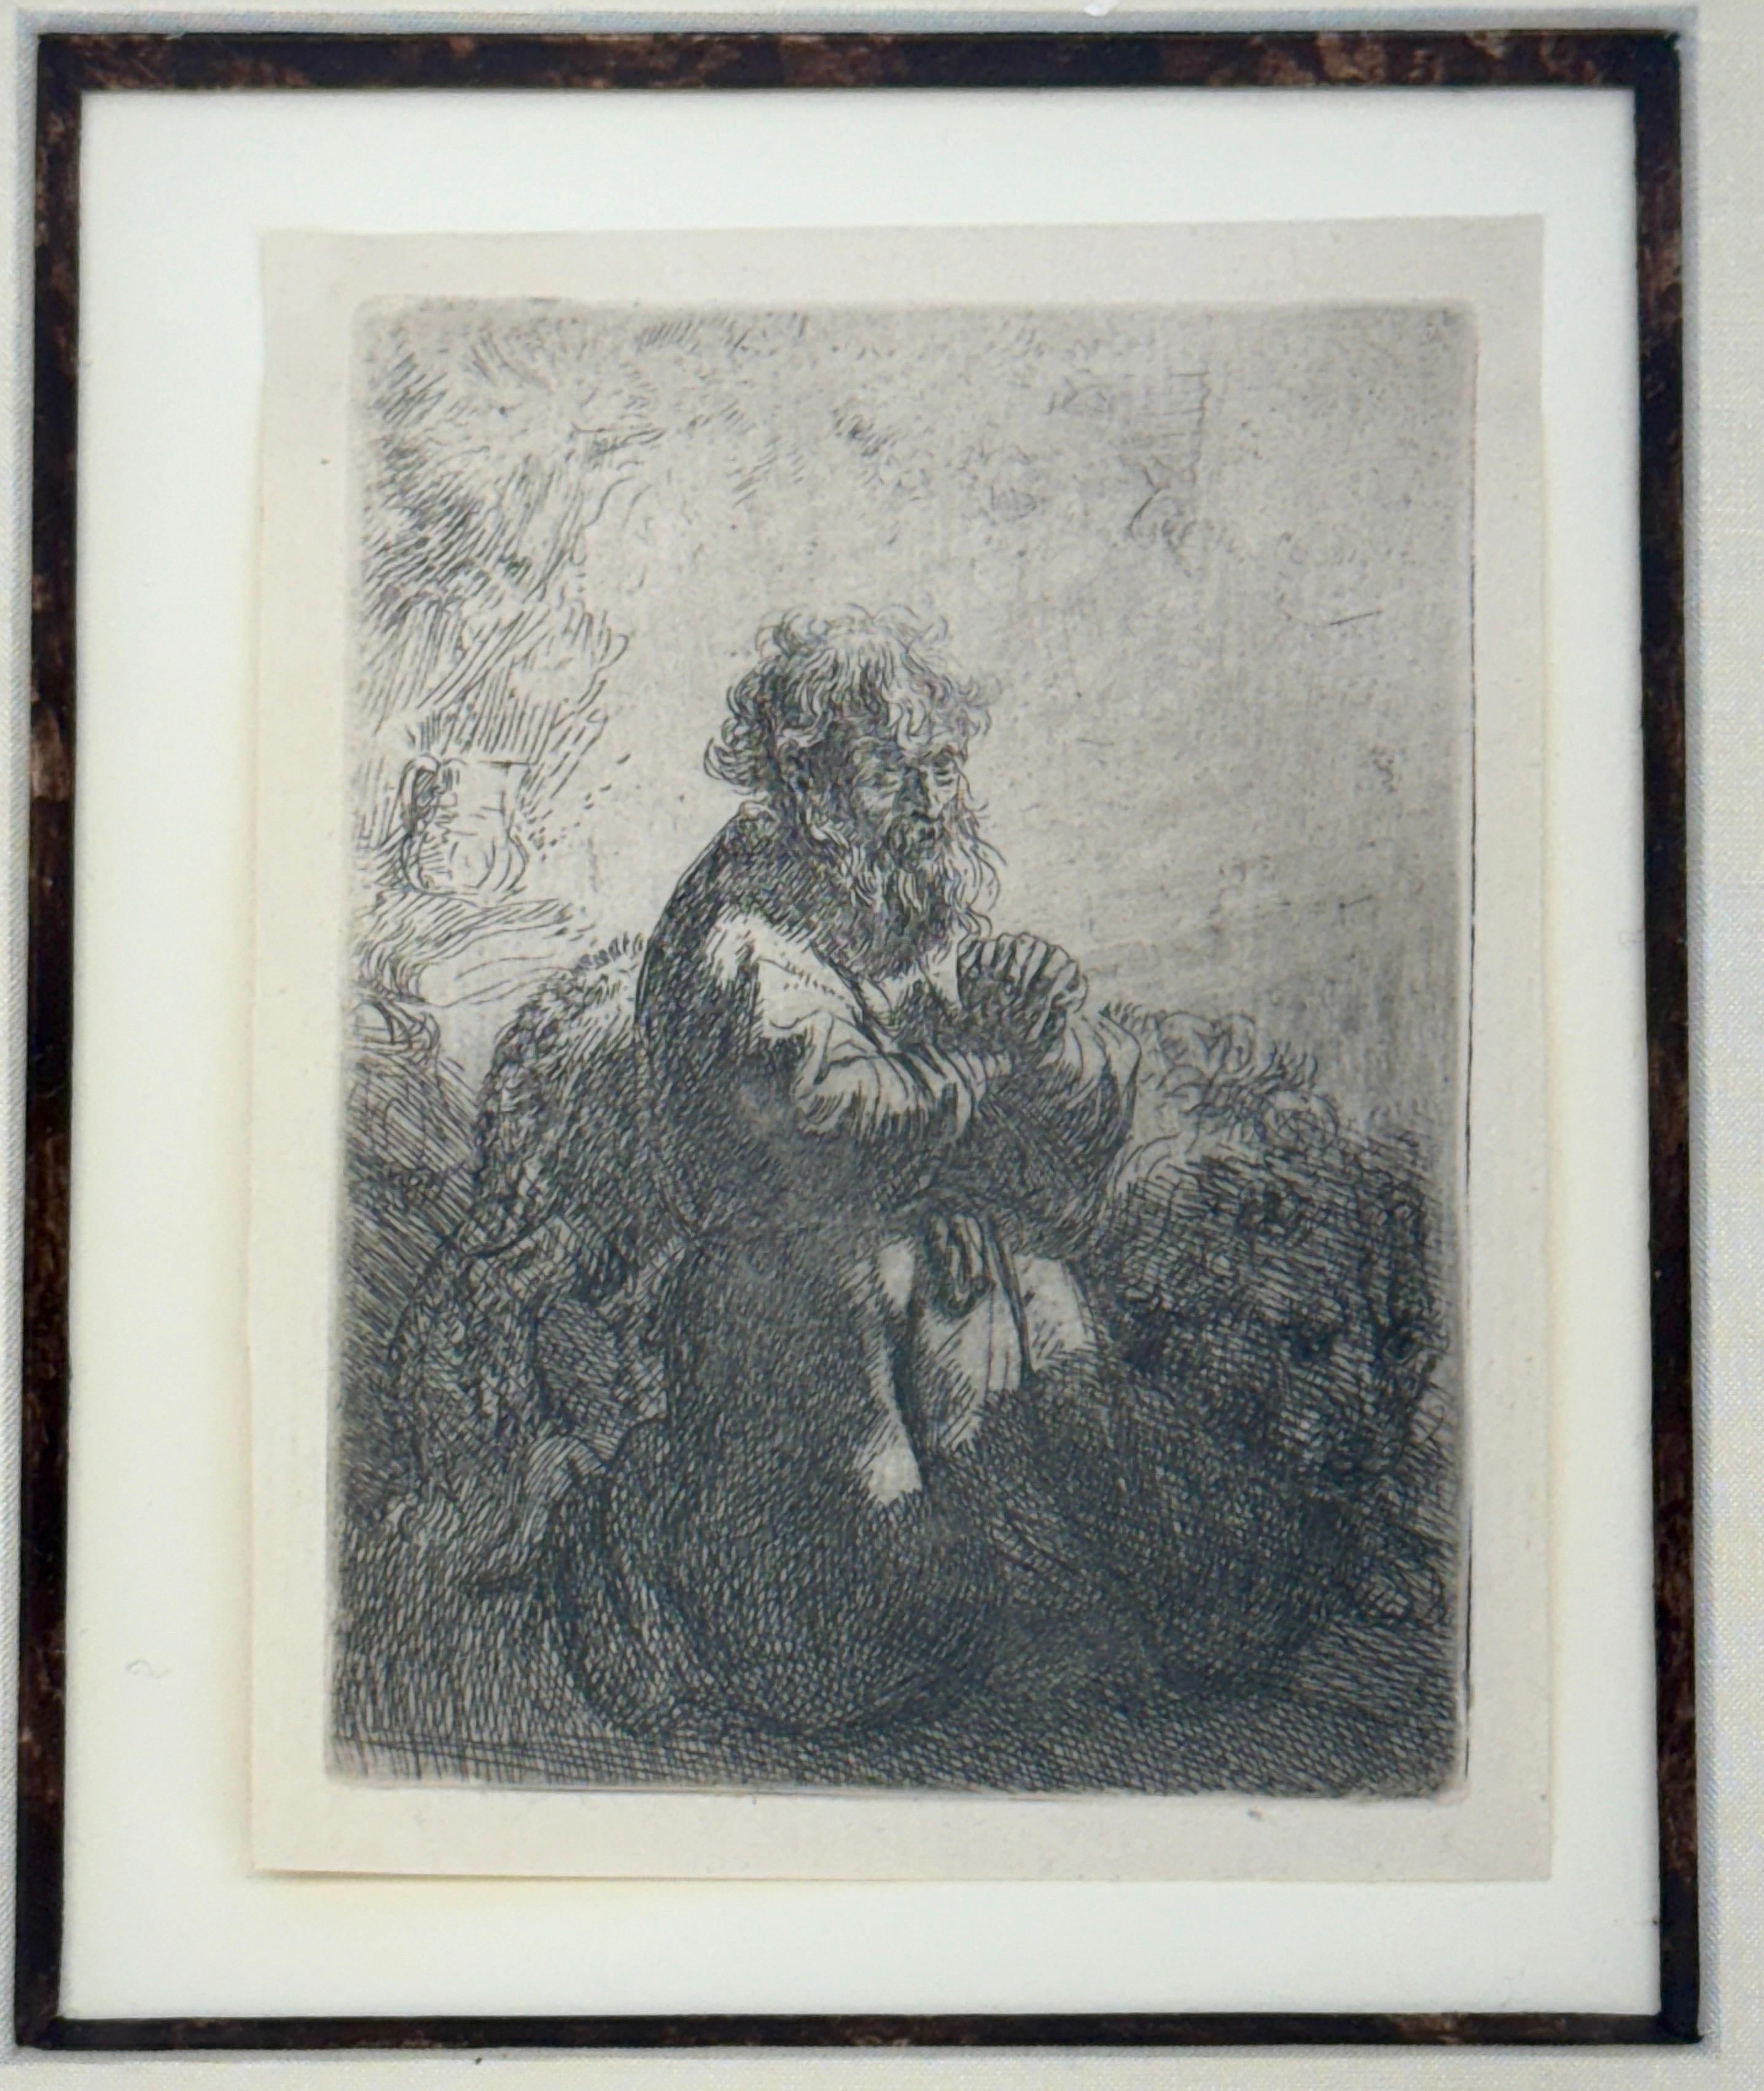 Der heilige Hieronymus kniend im Gebet, nach unten schauend Signierte Radierung auf Papier

Klassische Radierung von Rembrandt Harmenszoon van Rijn, gerahmt, in der Platte signiert und datiert. Der heilige Hieronymus war einer der frühen